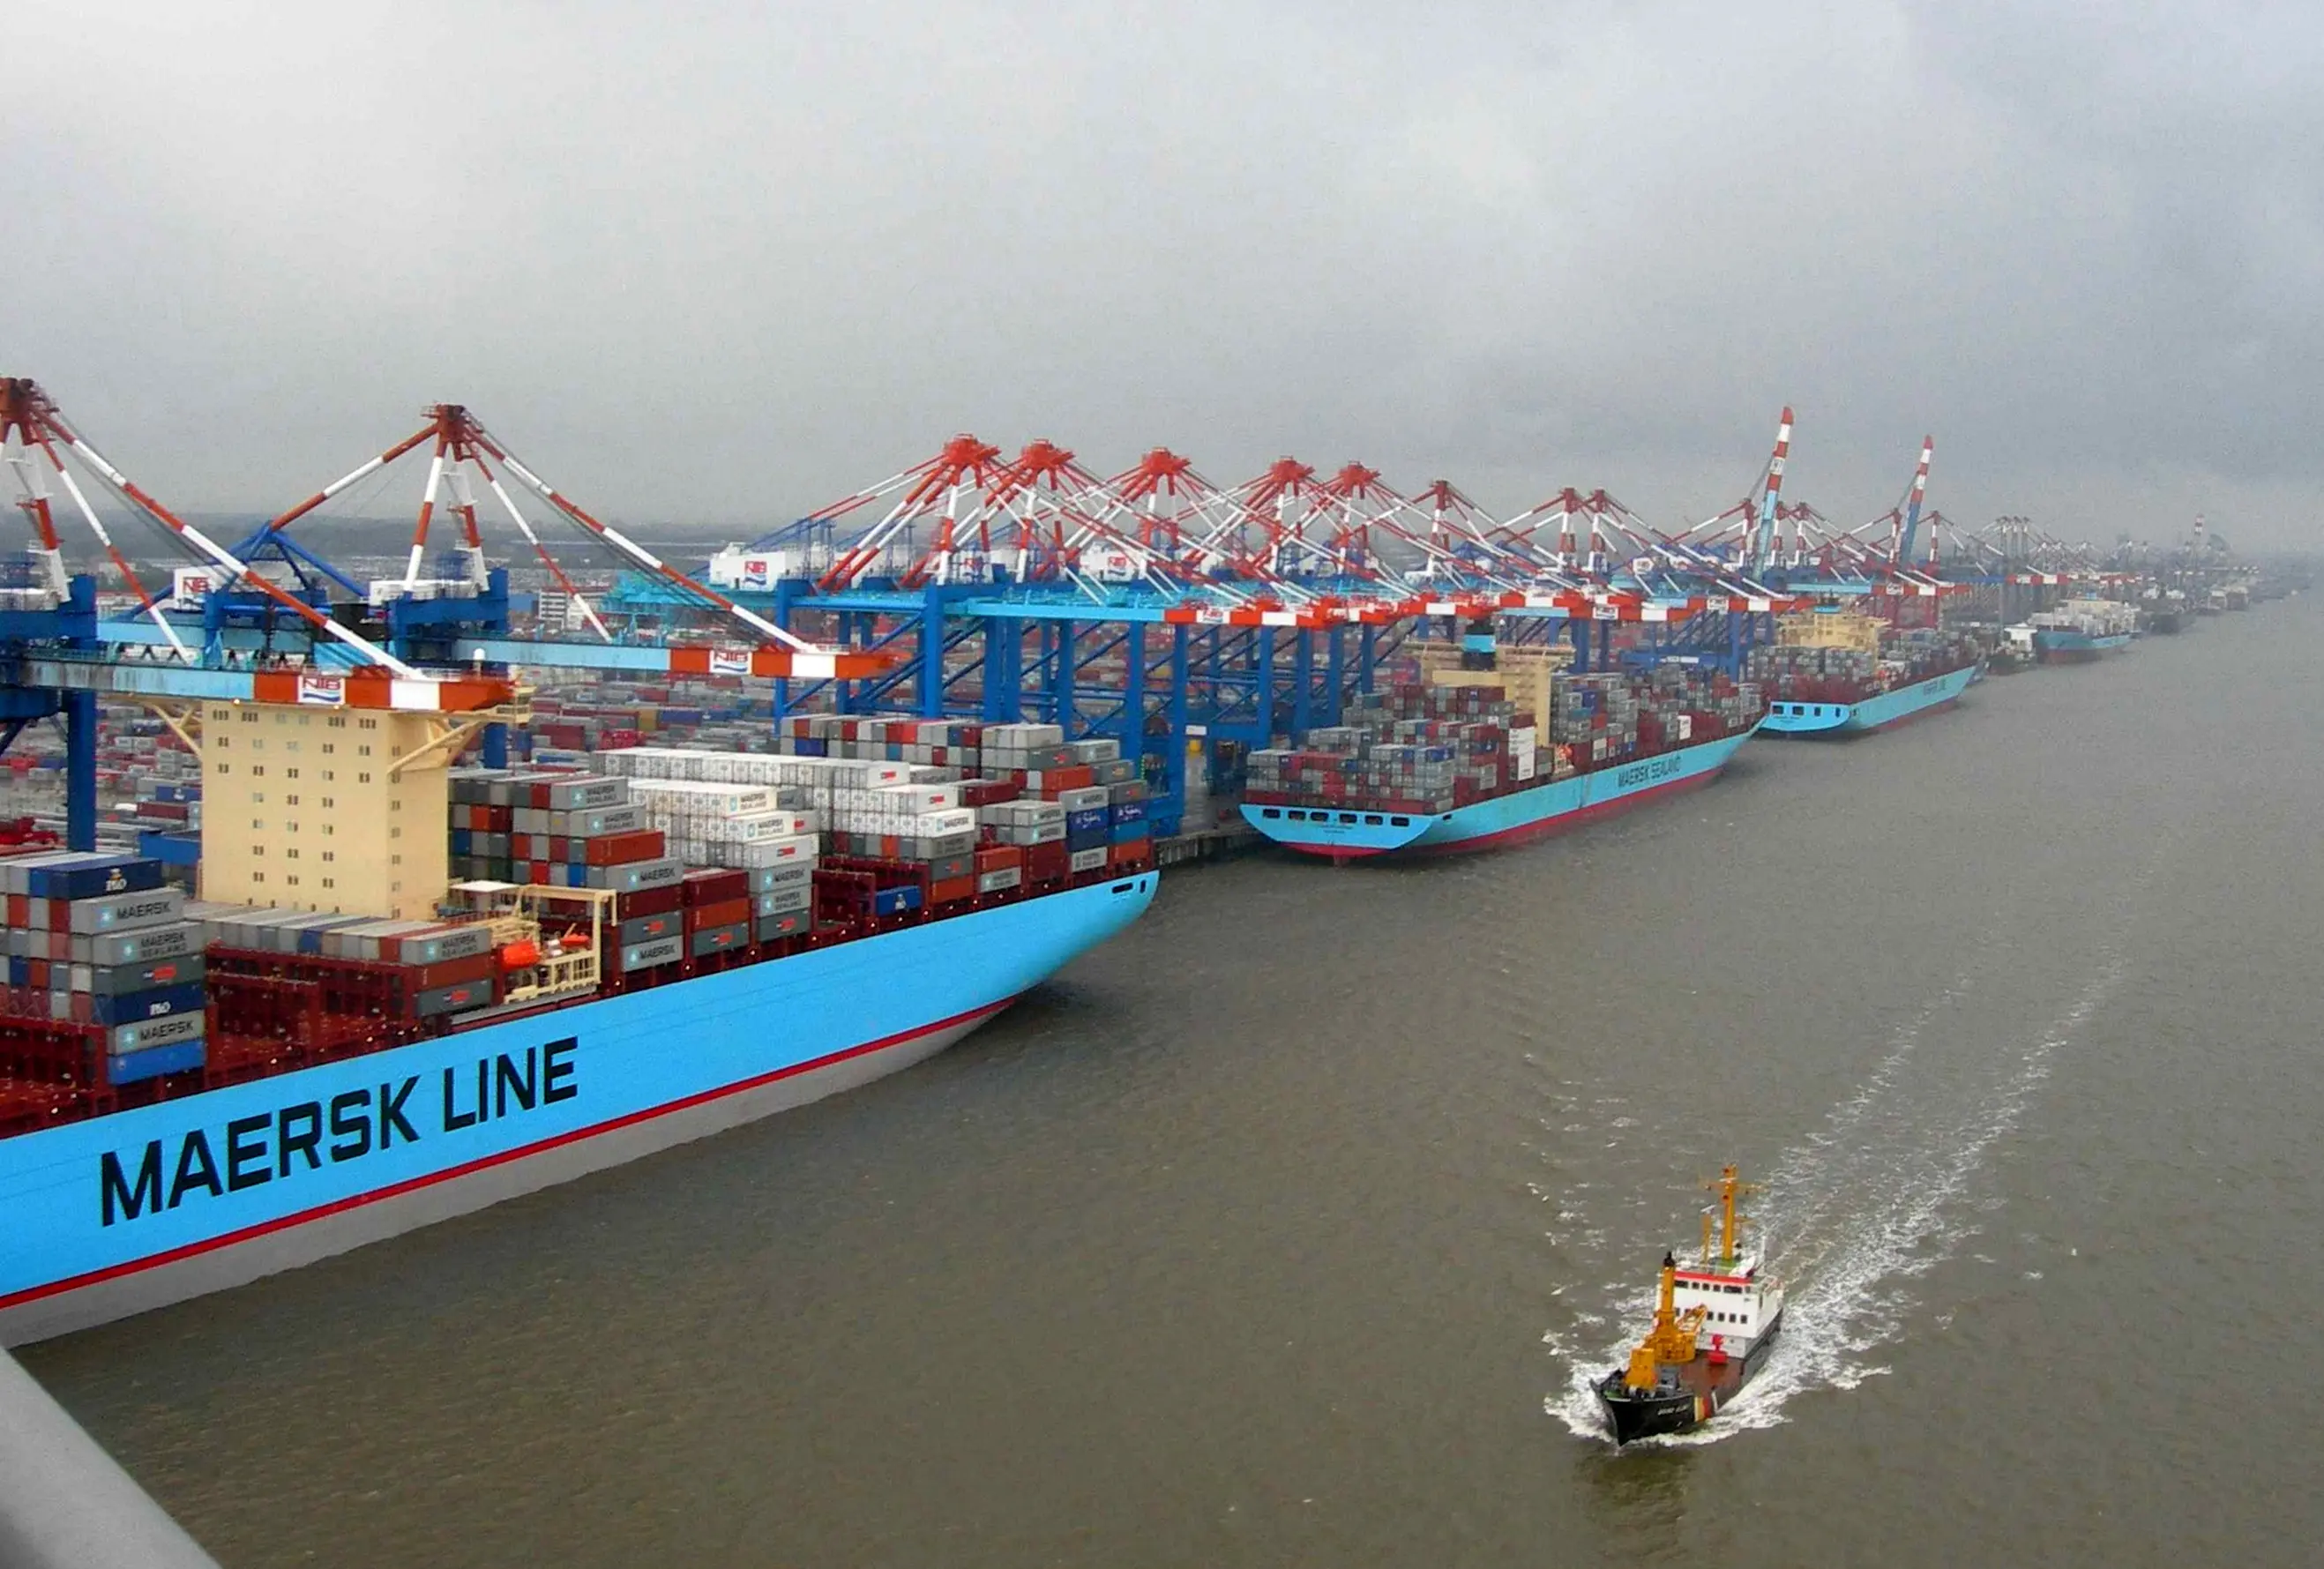 کاهش هزینه عامل بقای صنعت کشتیرانی جهان

